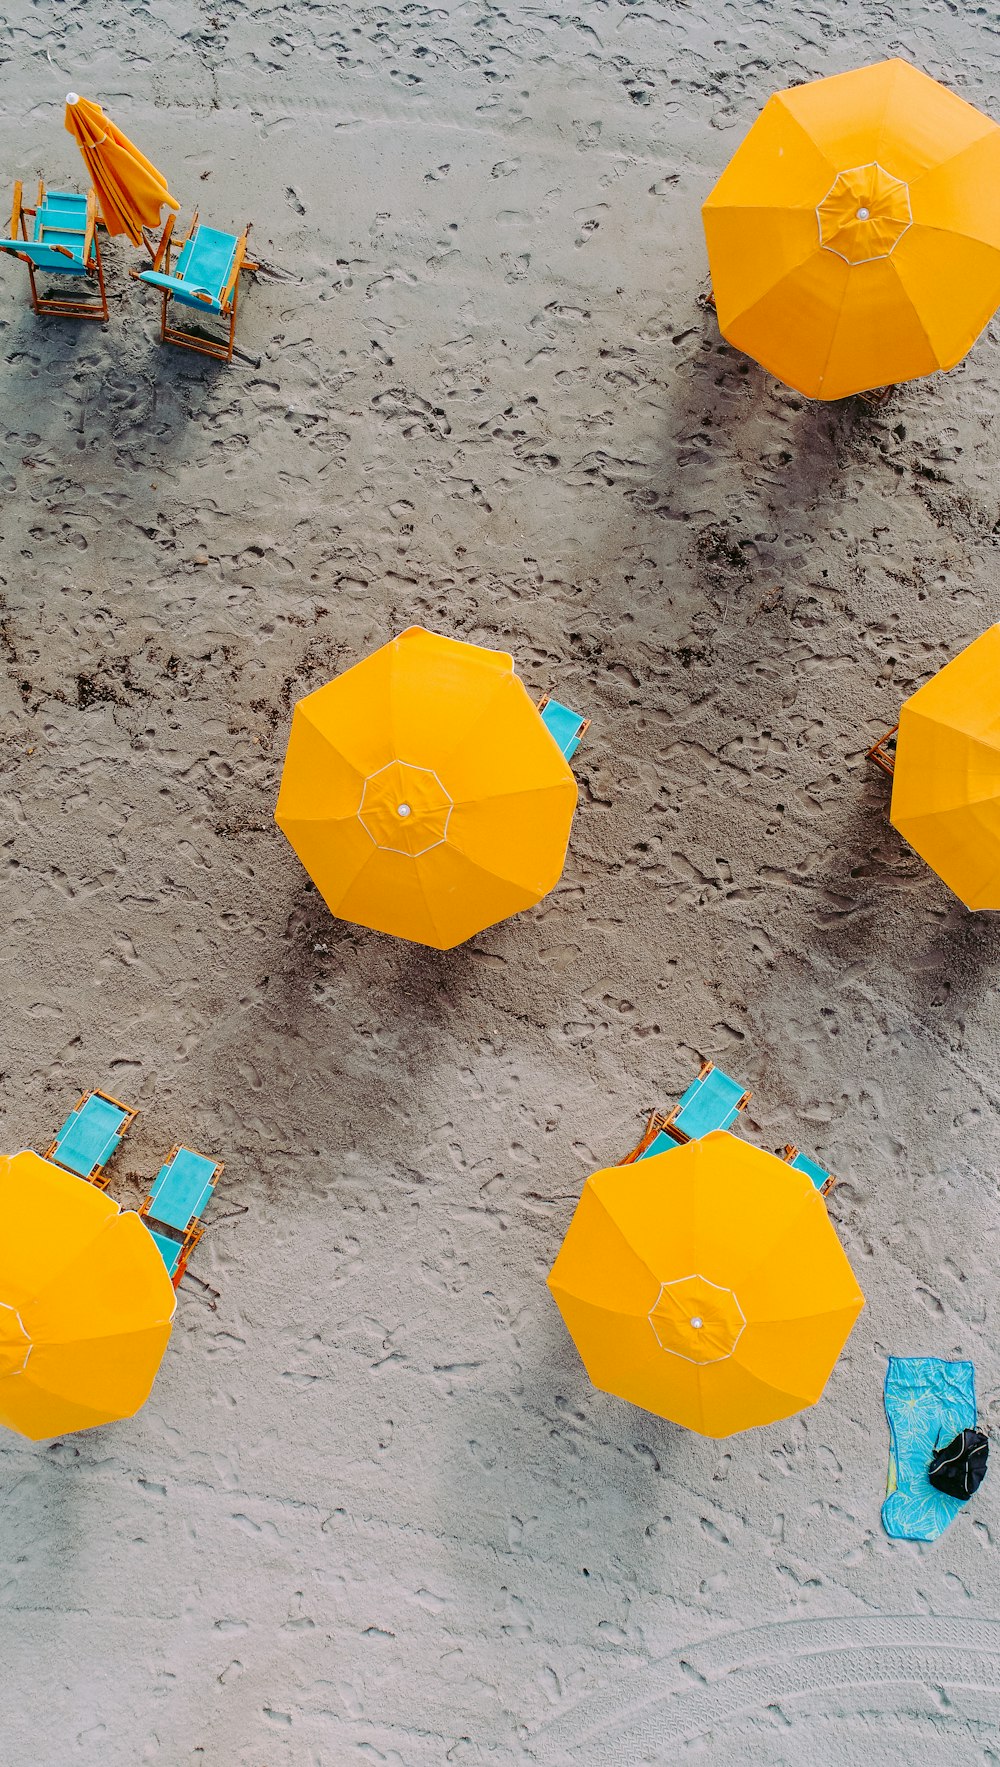 昼間の砂浜に5本の黄色い傘